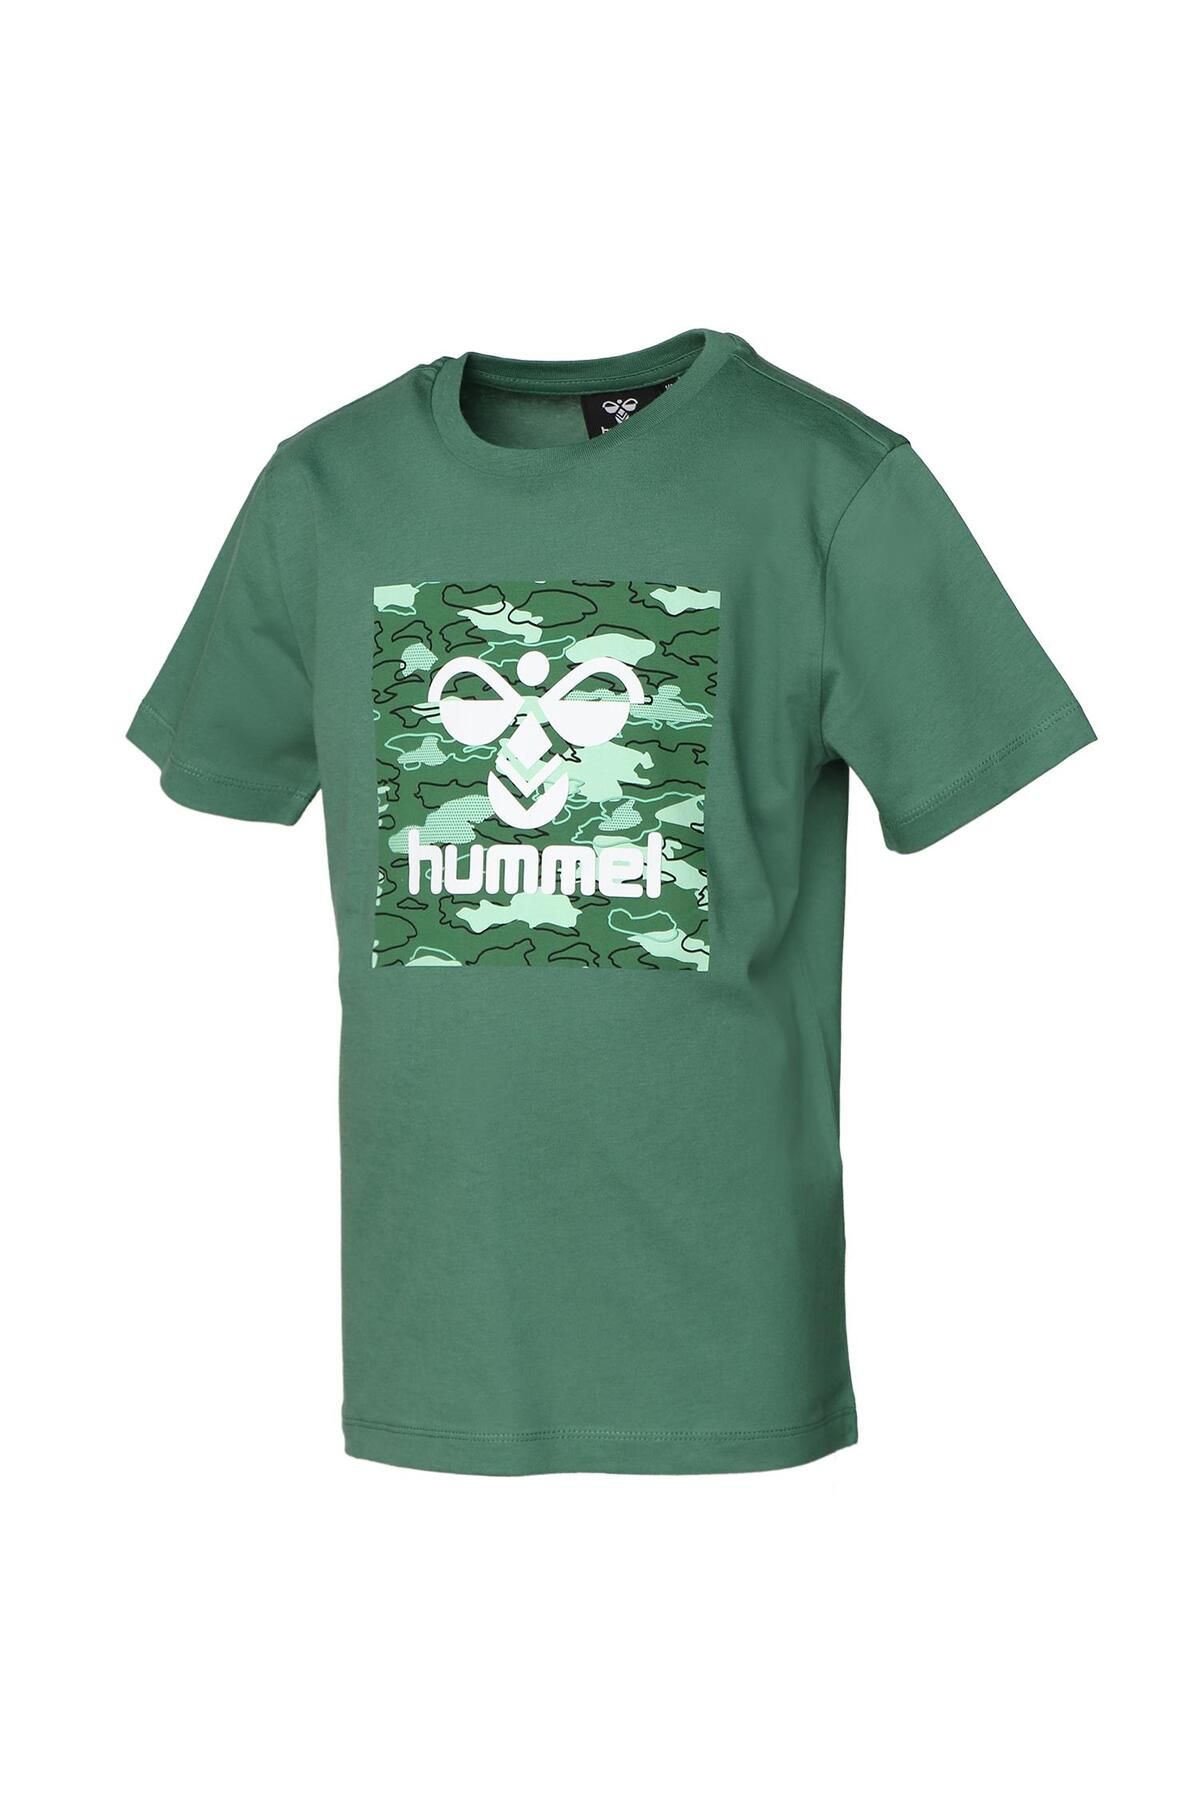 hummel 911646-2063 تی شرت پسر آدامز S/S